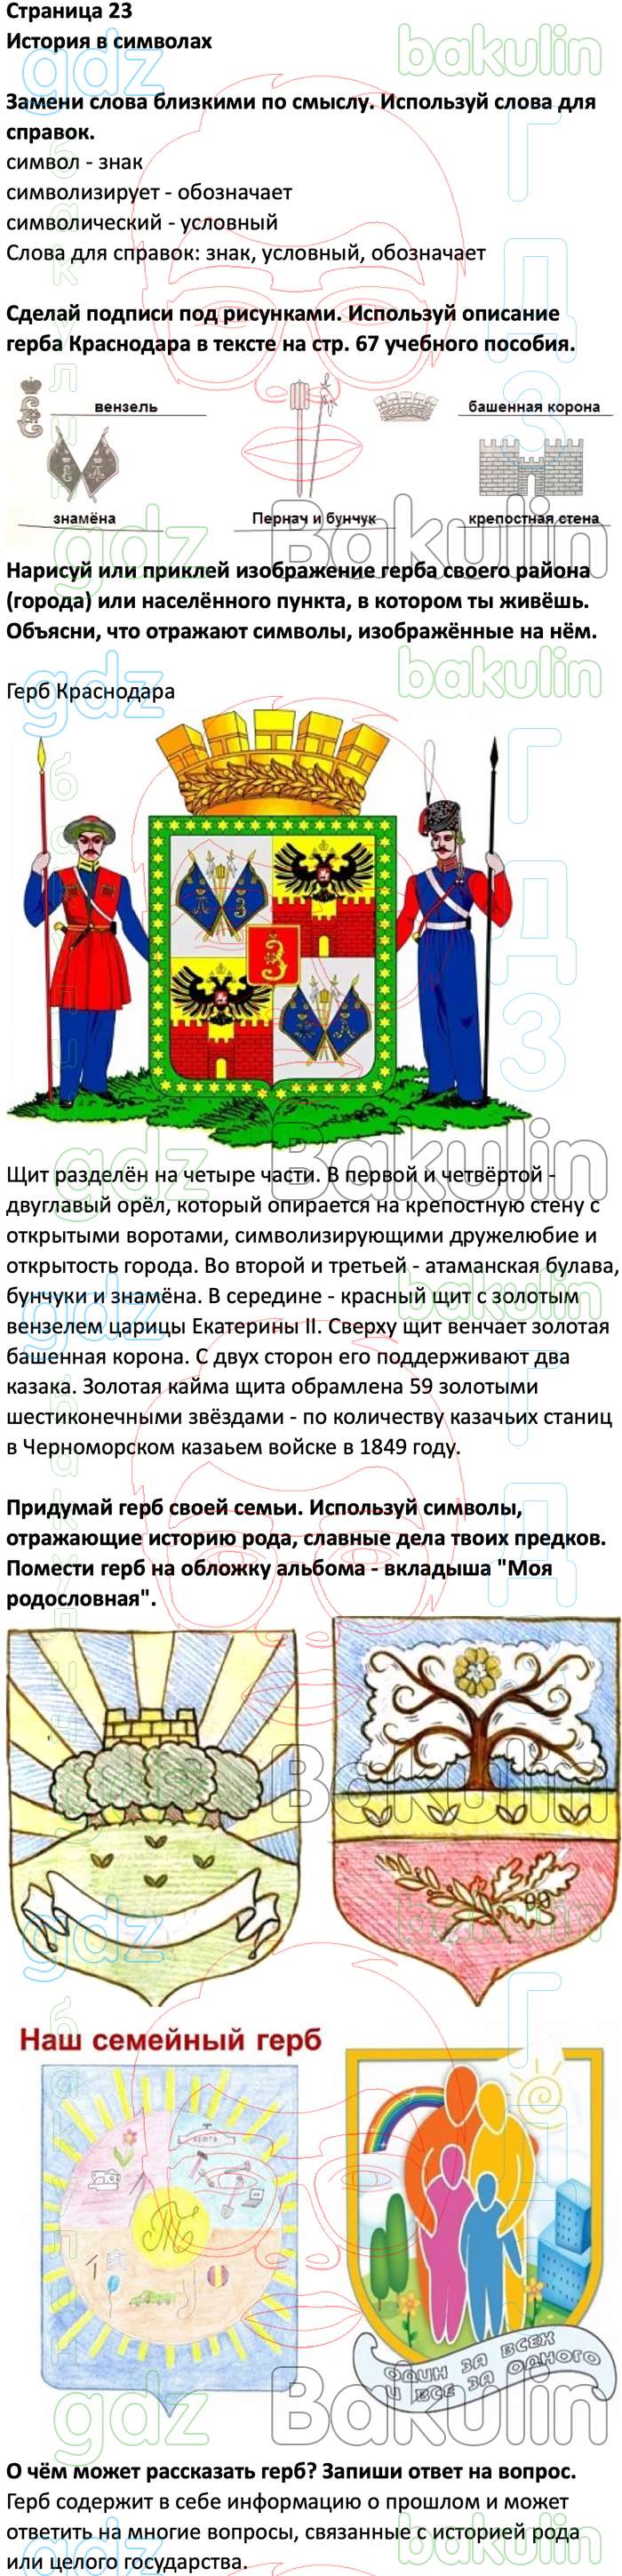 Кубановедение 4 класс герб города Краснодара